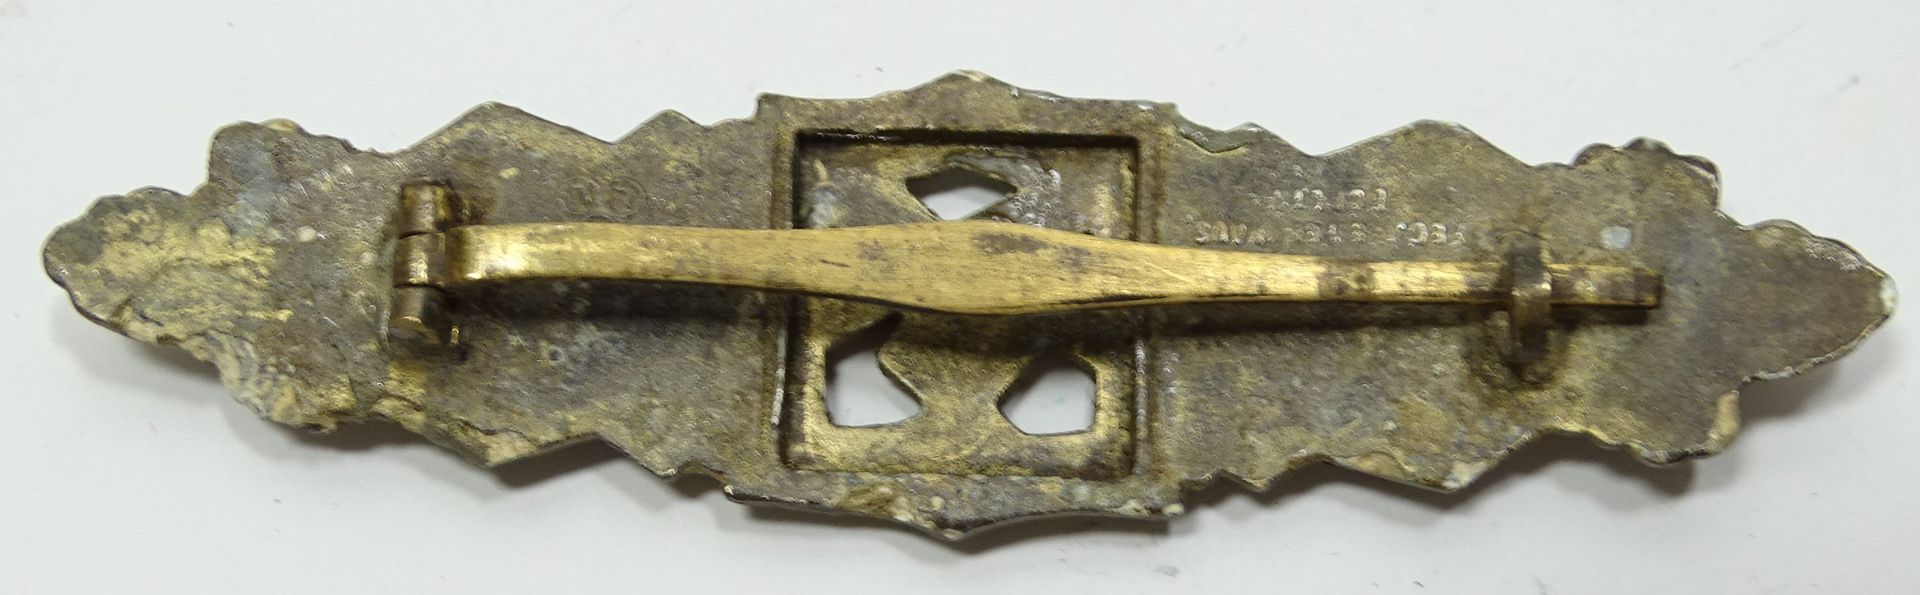 Nahkampfspange, 2. WK, in Bronze?, Rückseite mit Herstellernennung, Altersspuren und Abplatzer vorh - Bild 3 aus 5